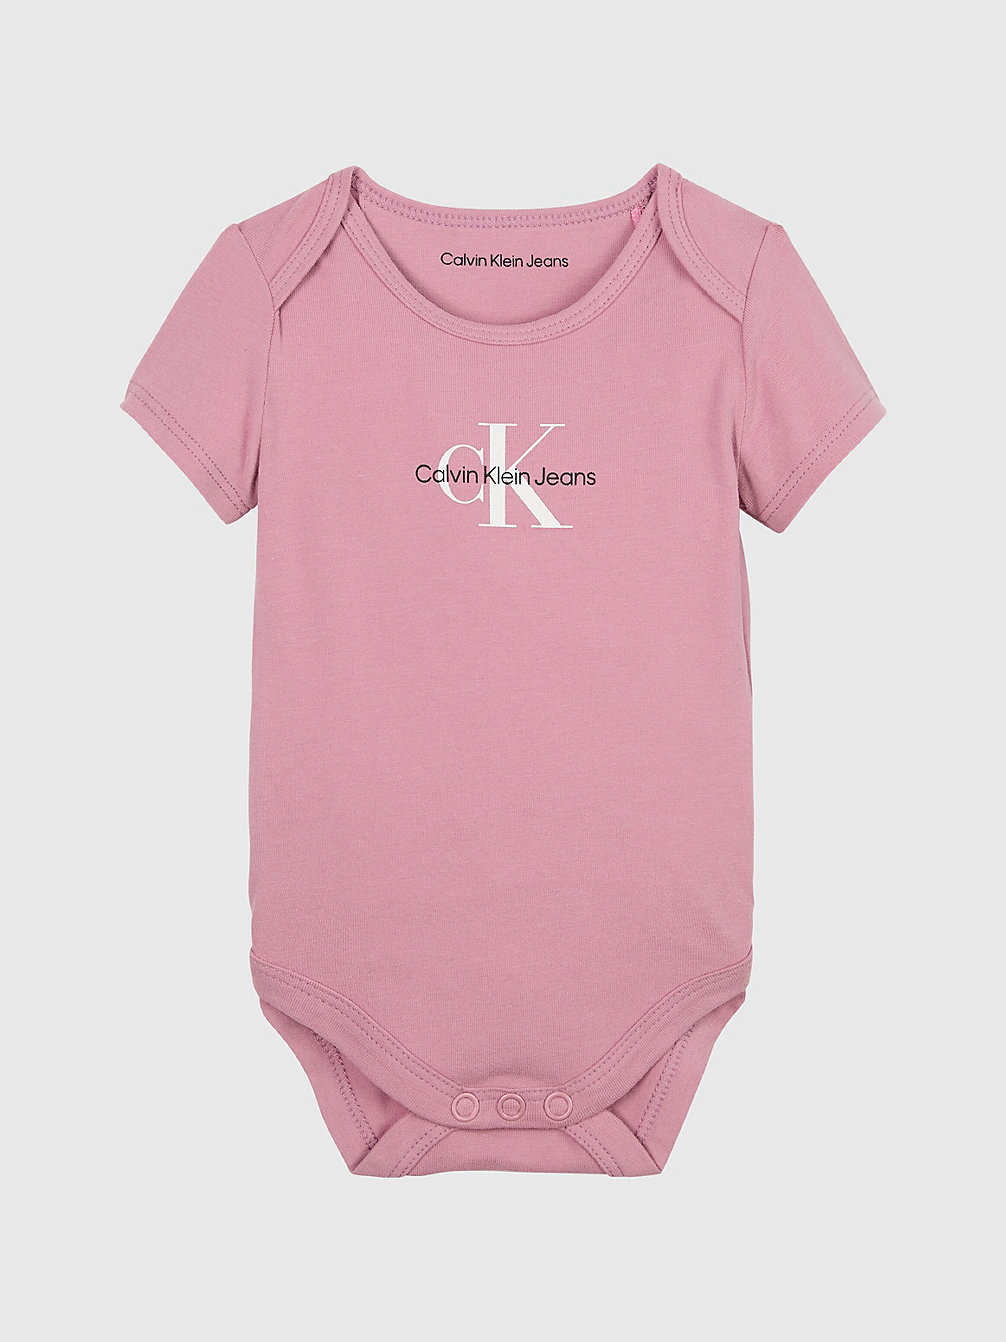 FOXGLOVE Logo-Baby-Body undefined newborn Calvin Klein